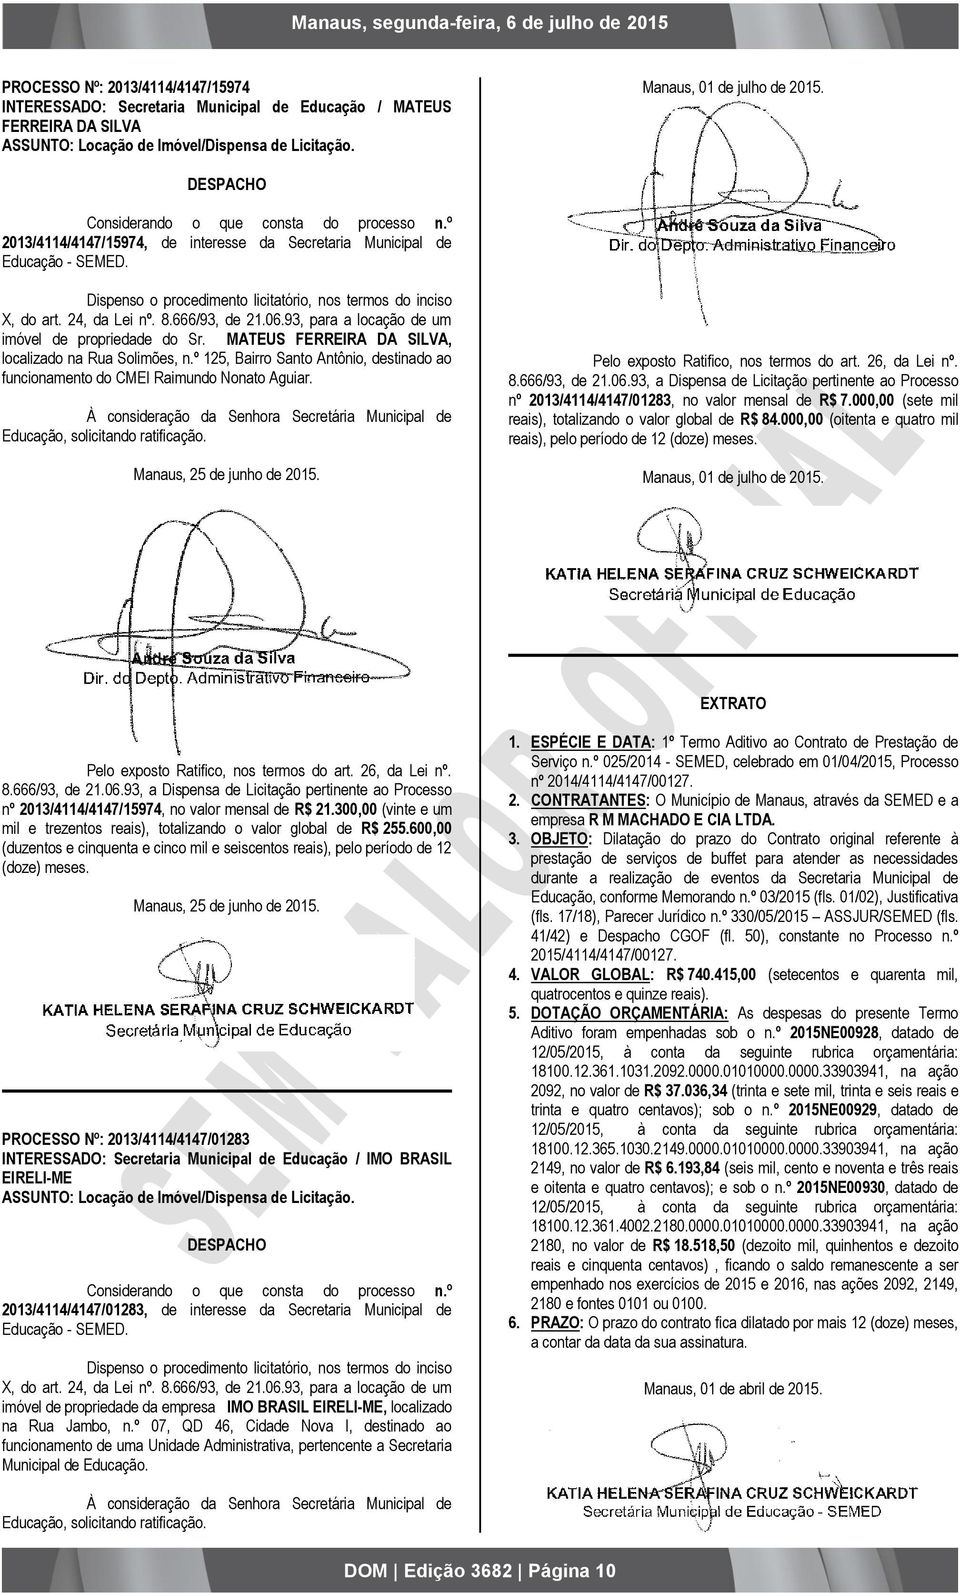 24, da Lei nº. 8.666/93, de 21.06.93, para a locação de um imóvel de propriedade do Sr. MATEUS FERREIRA DA SILVA, localizado na Rua Solimões, n.